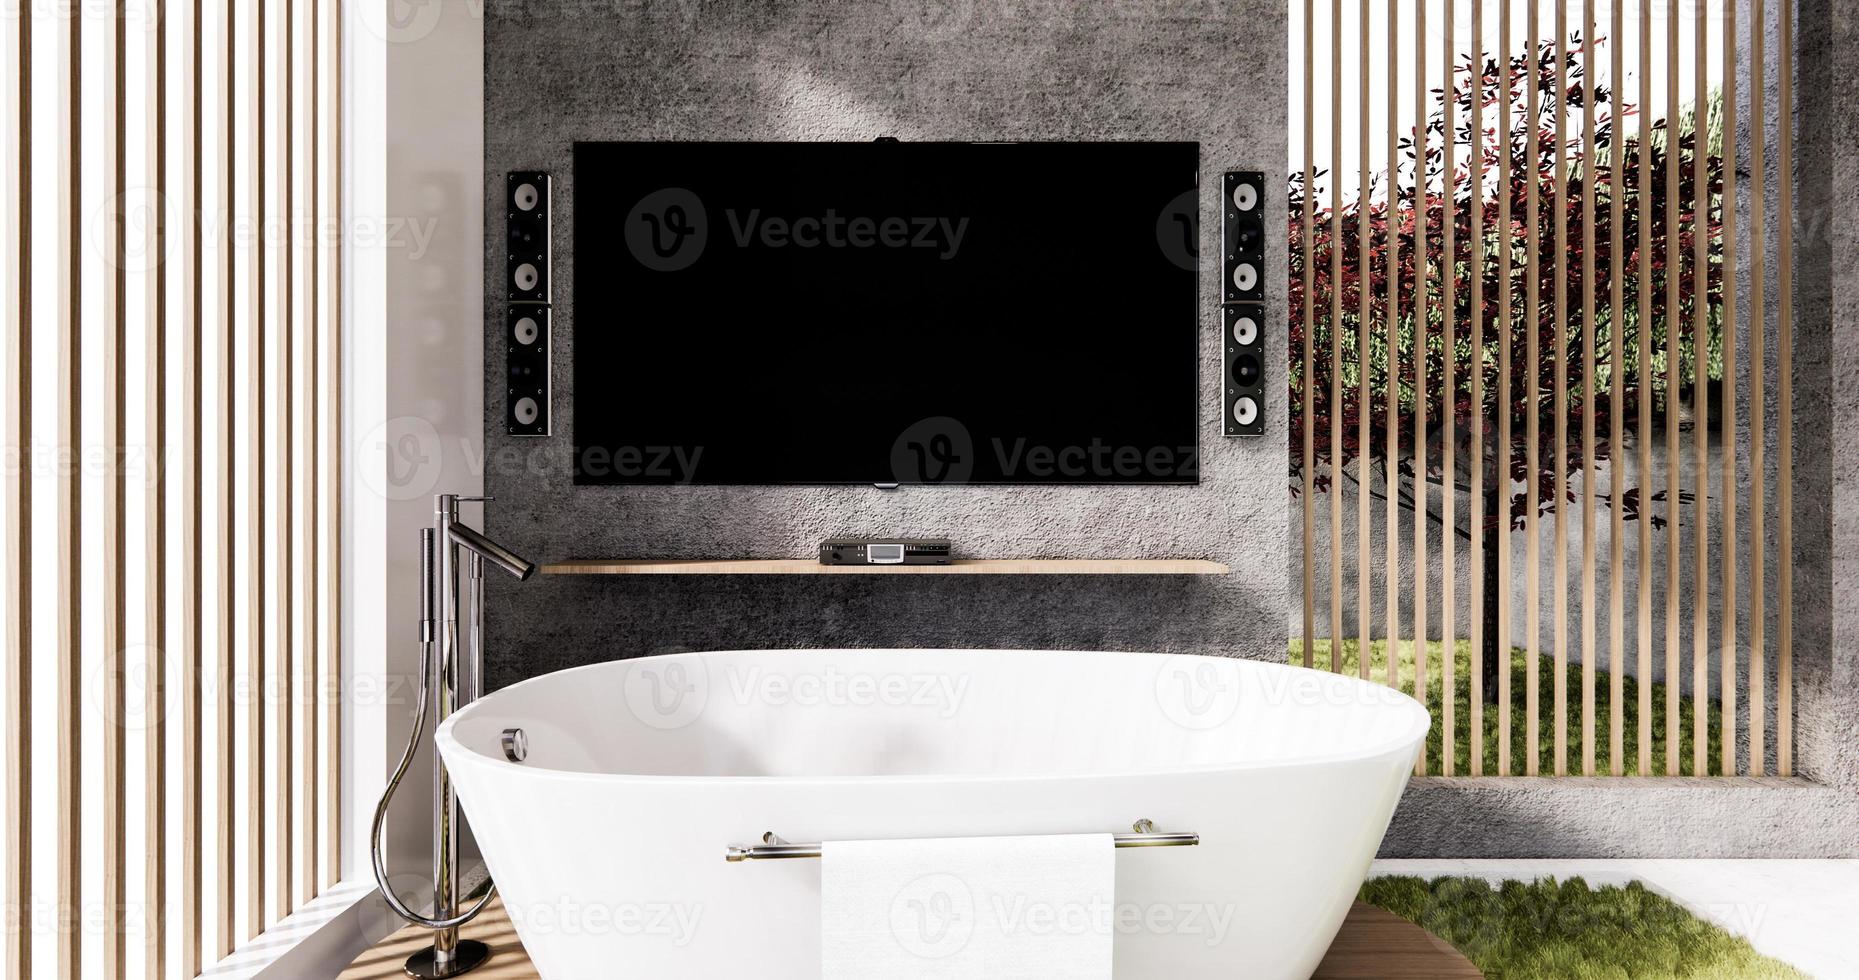 banheira e toalete no banheiro estilo zen com smart tv na parede design.3d rendering foto